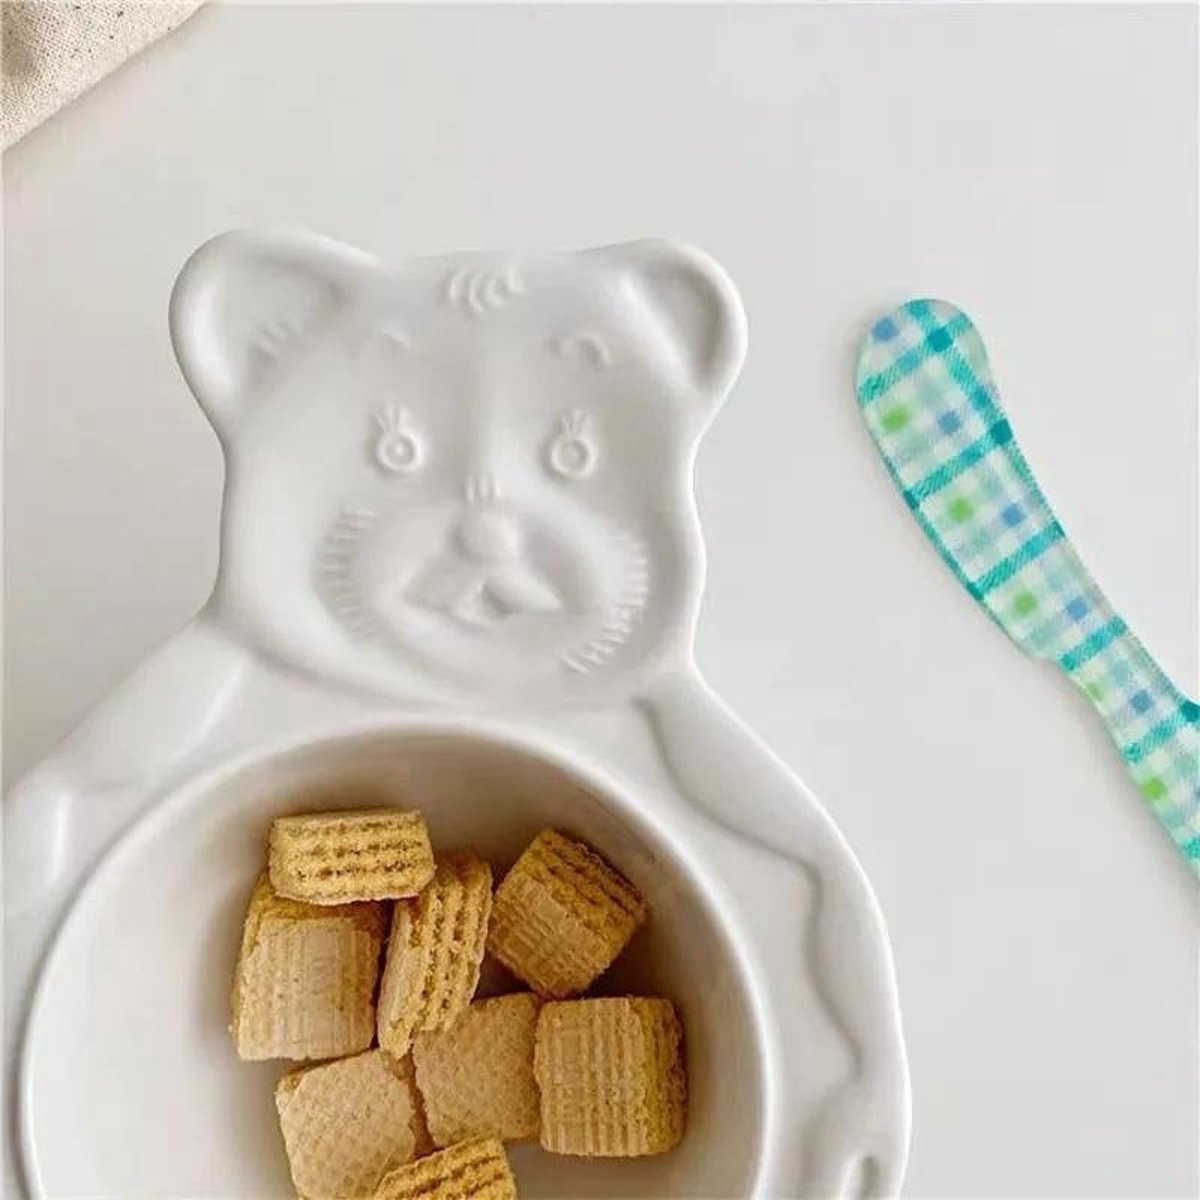 Cereal & Snack Kommetje voor Kinderen - Kommetje - Kinderfriendly- Bord voor Kinderen